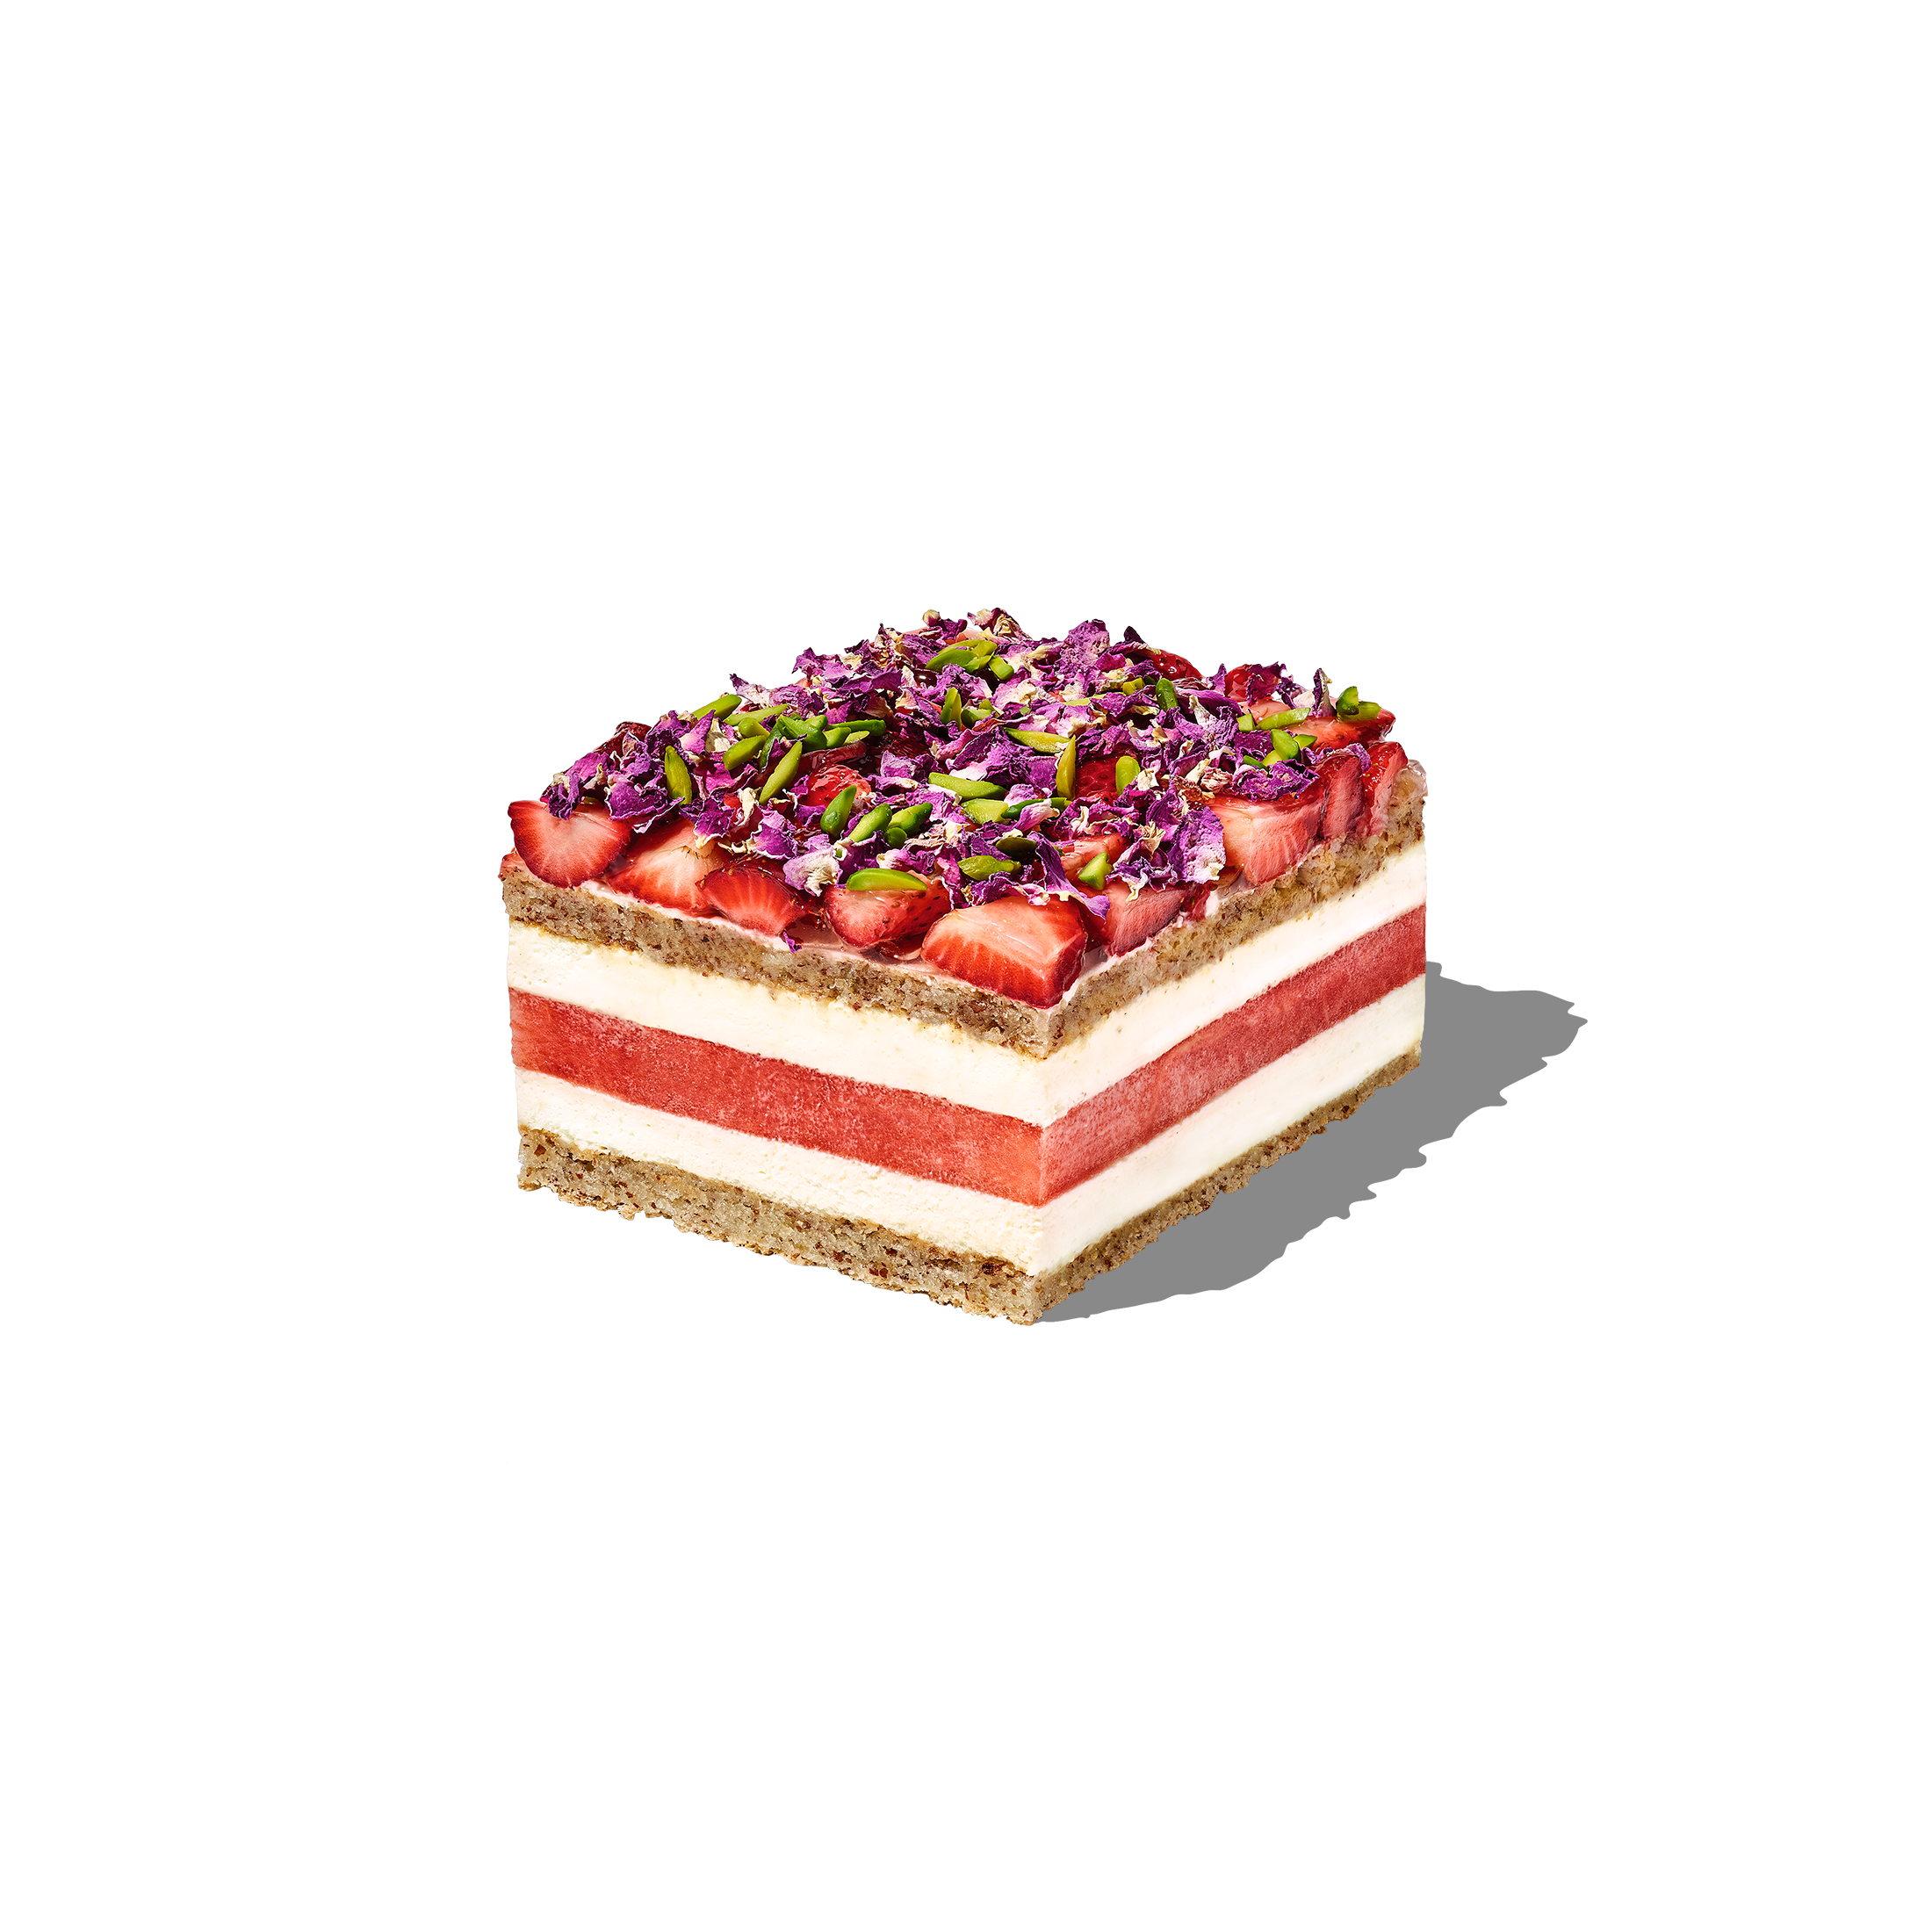 Strawberry Watermelon Cake - 06 portion (15x12cm)